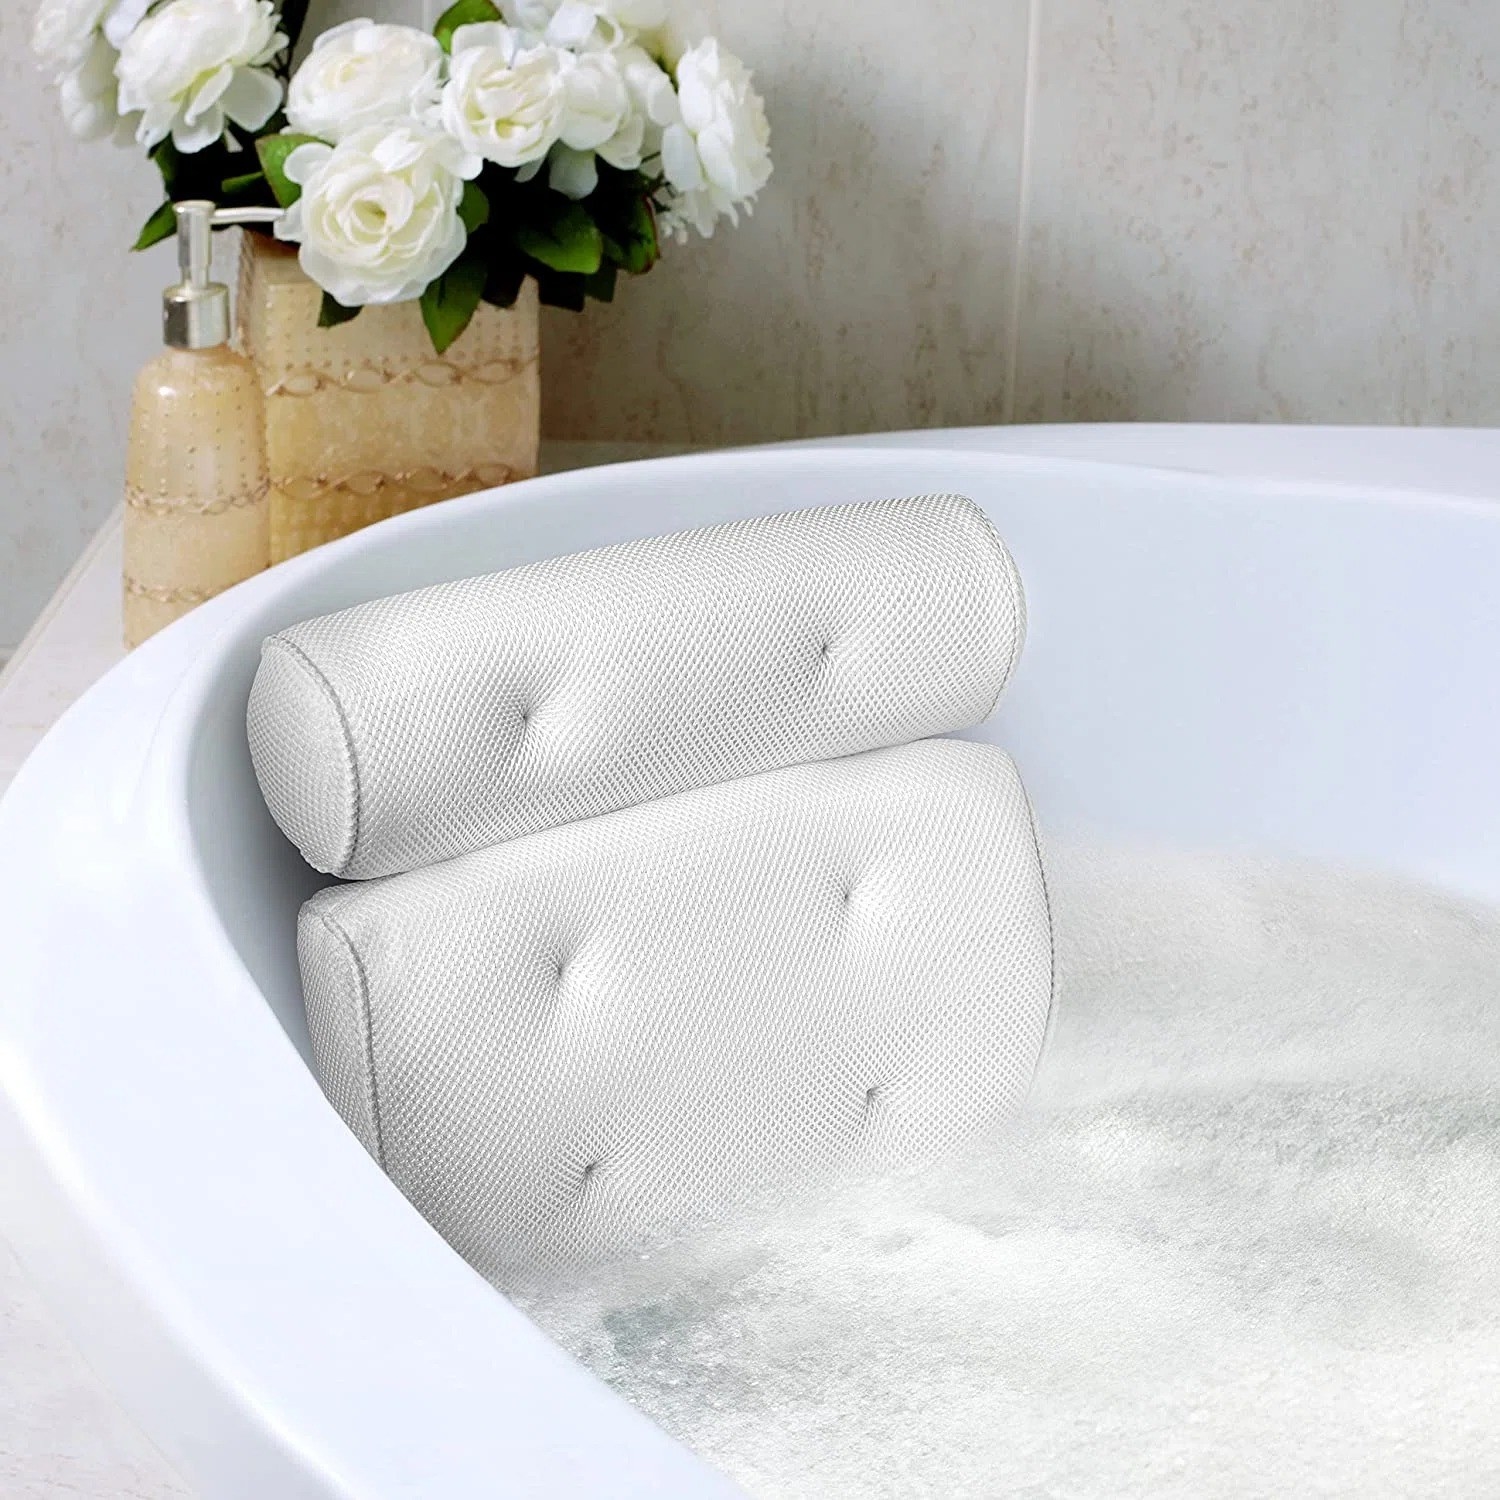 The bath pillow in a tub